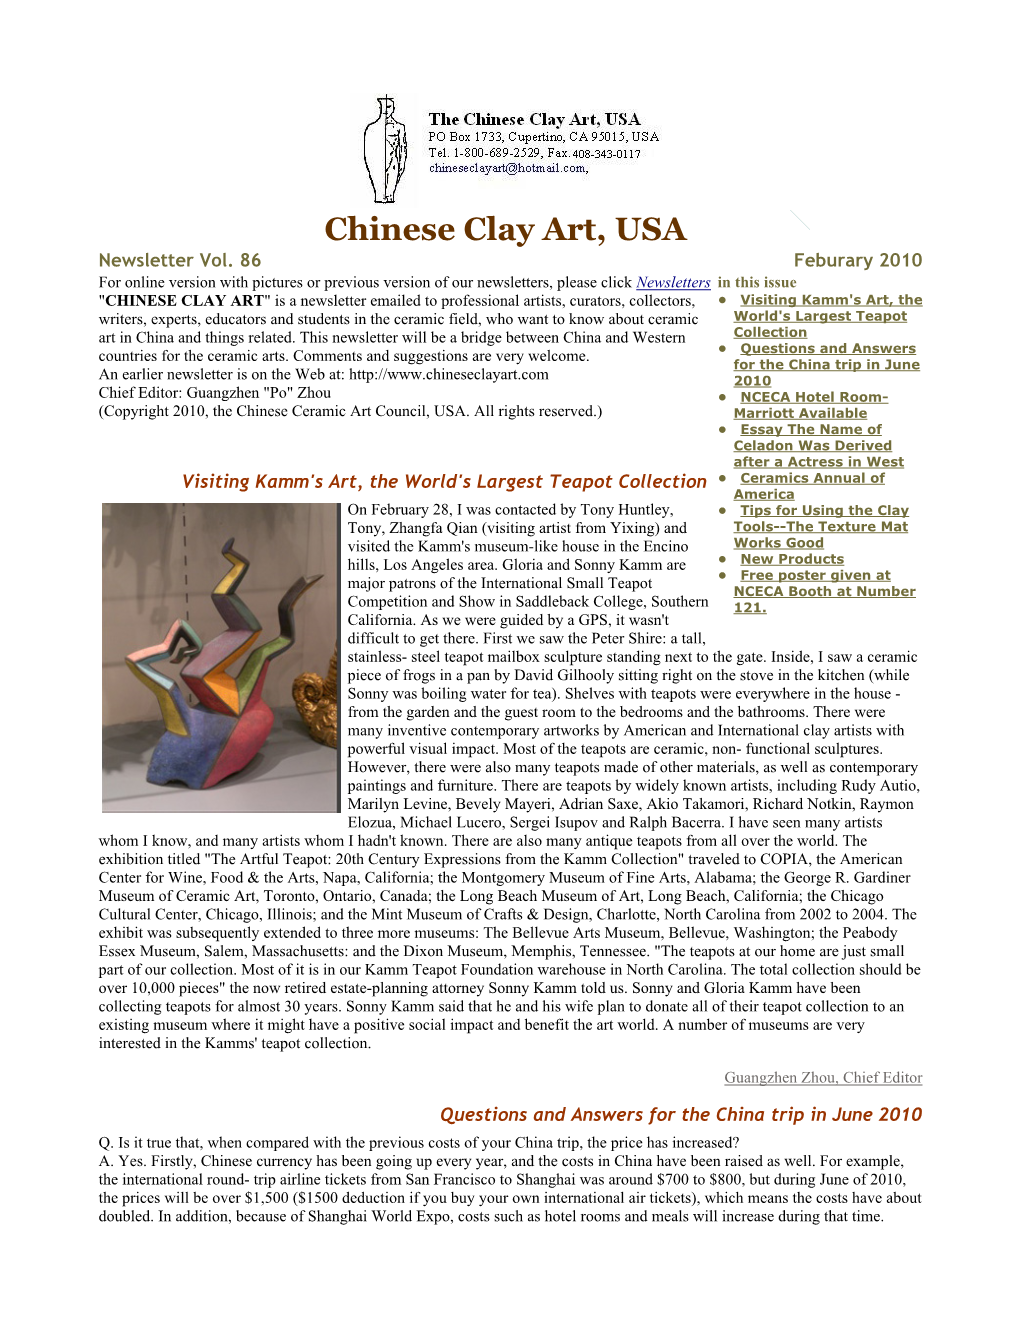 Chinese Clay Art News